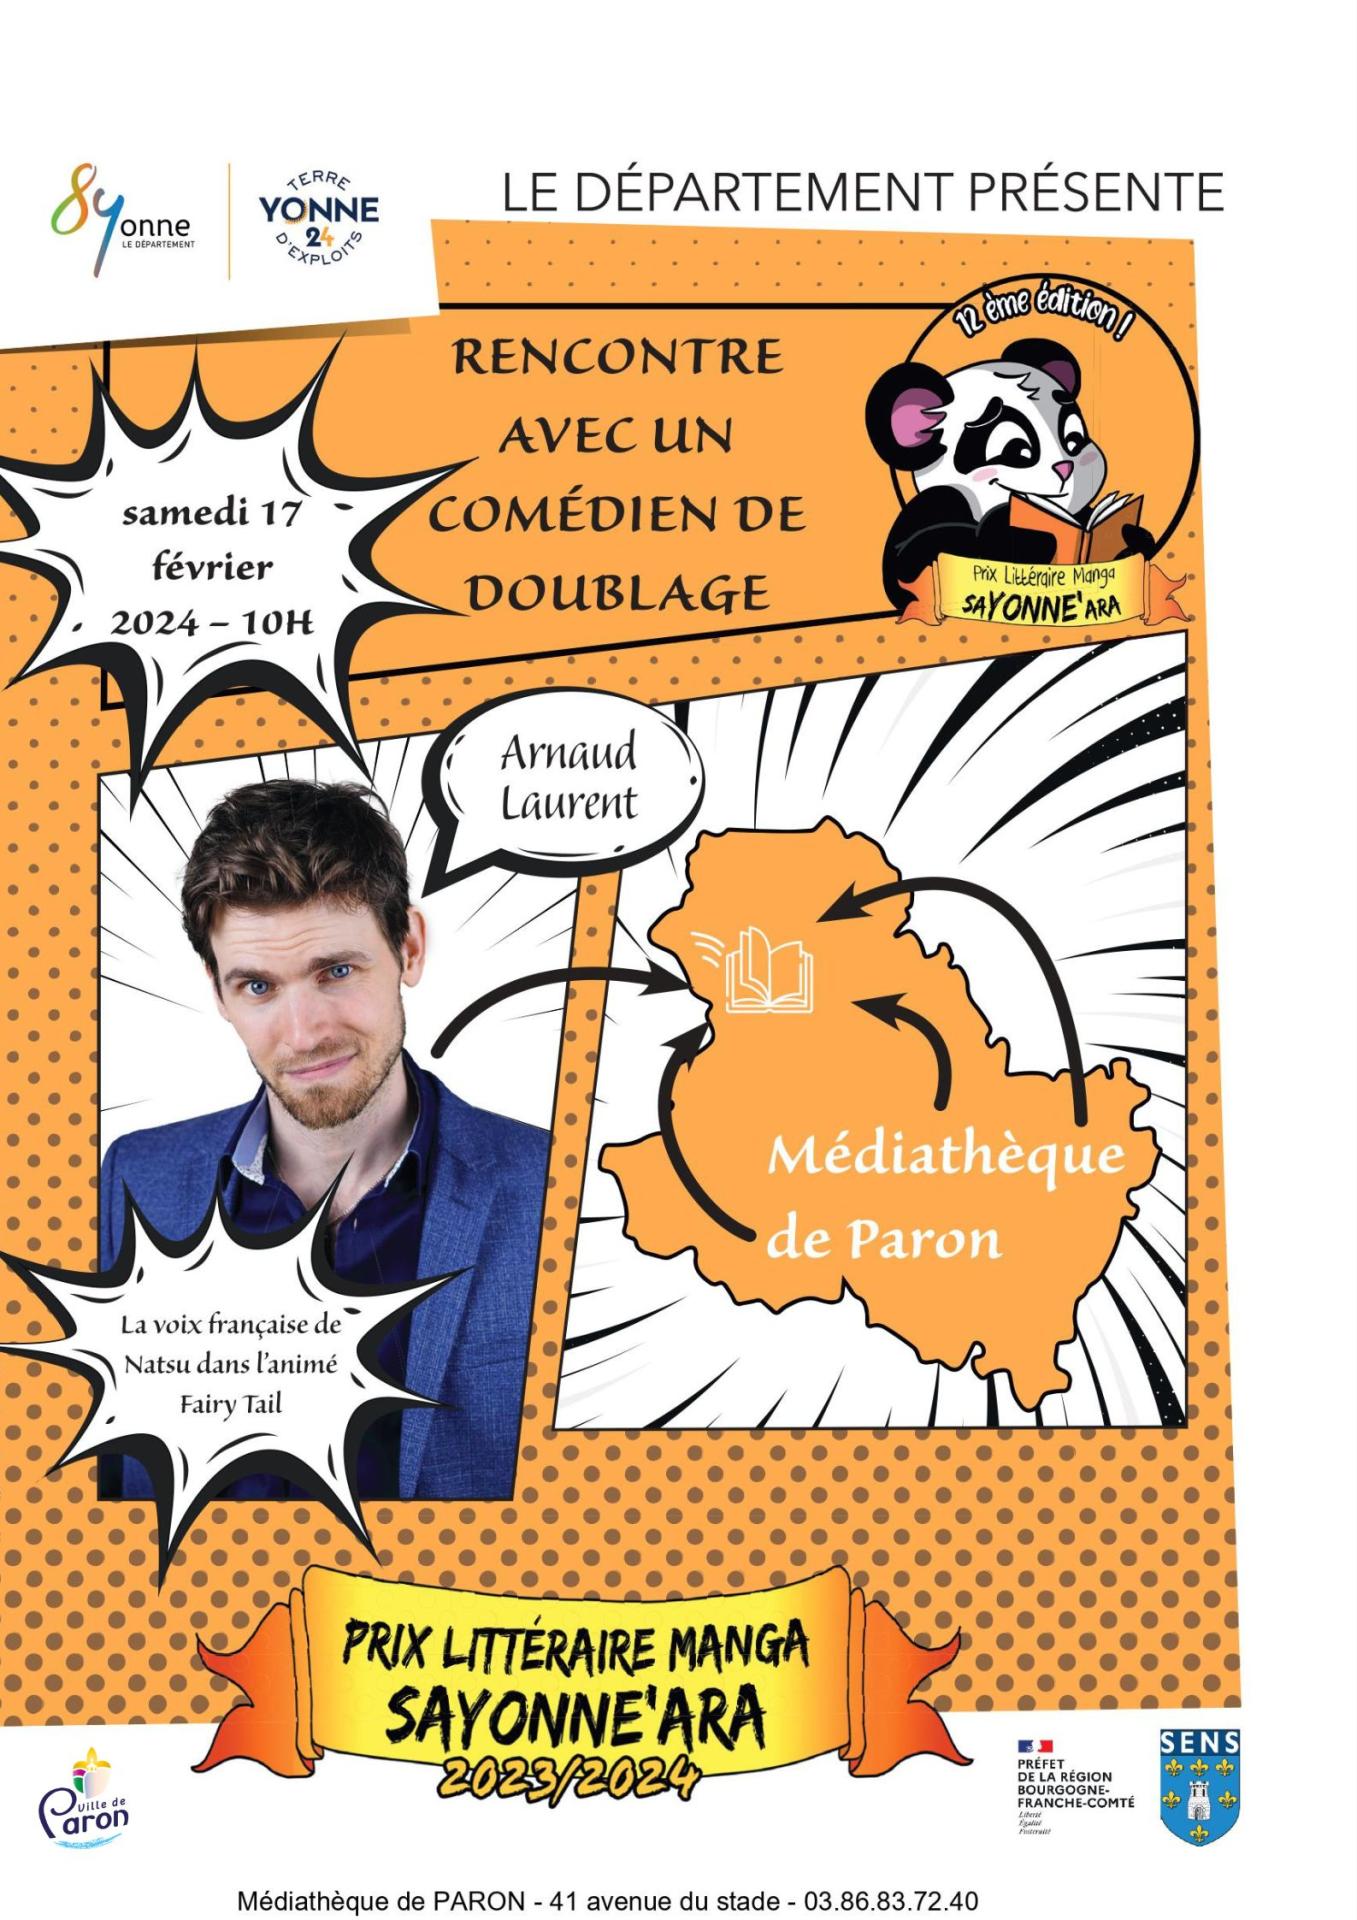 Le comédien de doublage Arnaud Laurent à la médiathèque municipale de Paron le samedi 17 février de 10h00 à 12h00.